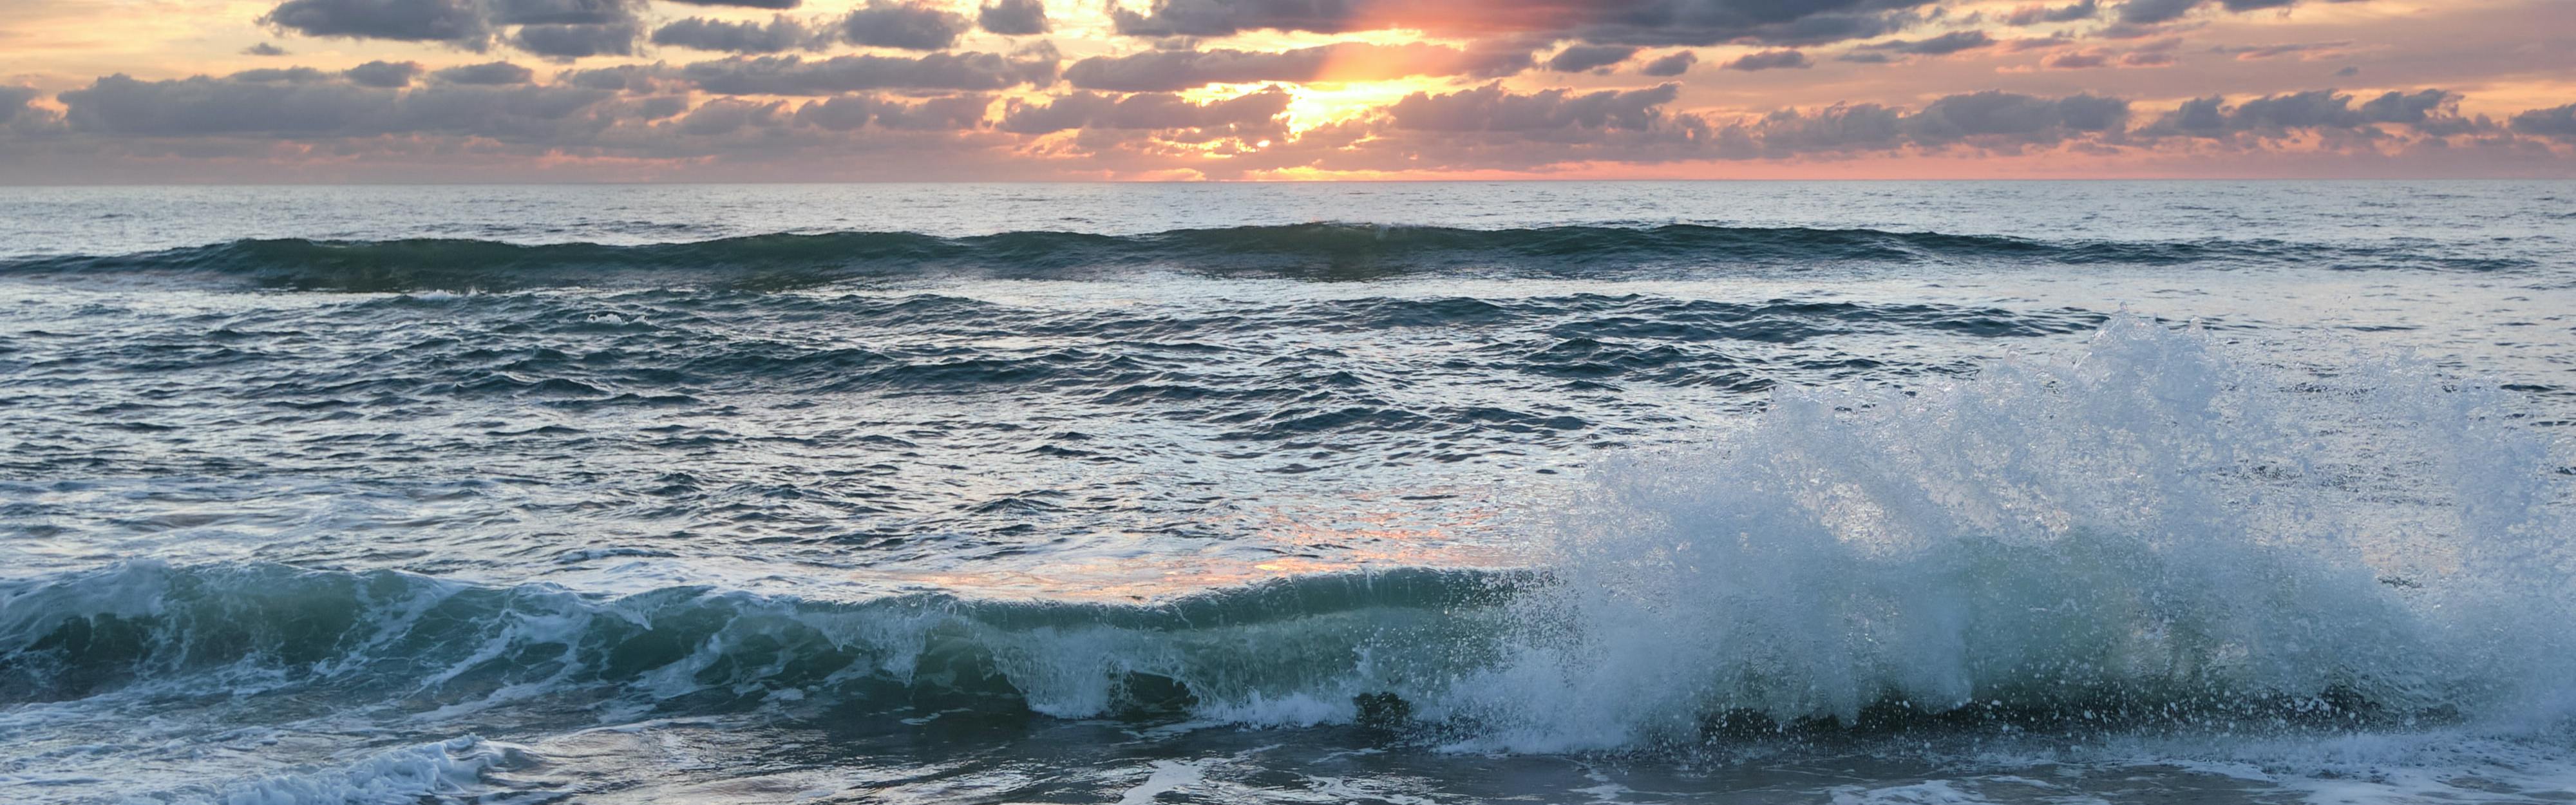 Waves crash at sunset or sunrise.